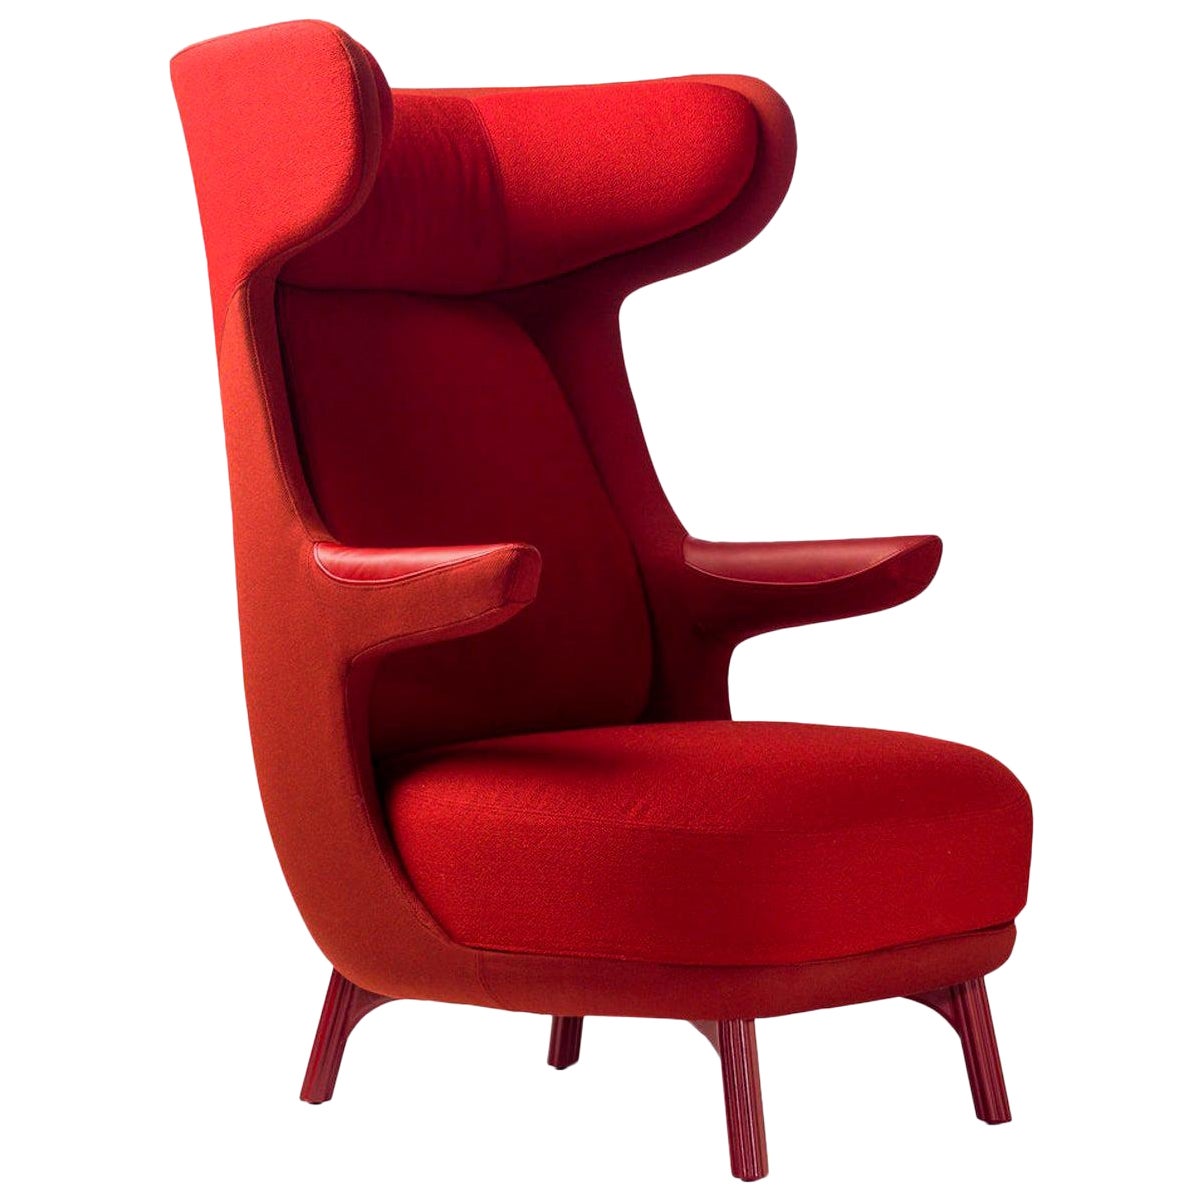 Jaime Hayon, fauteuil Dino tapissé de tissu rouge monocolore 